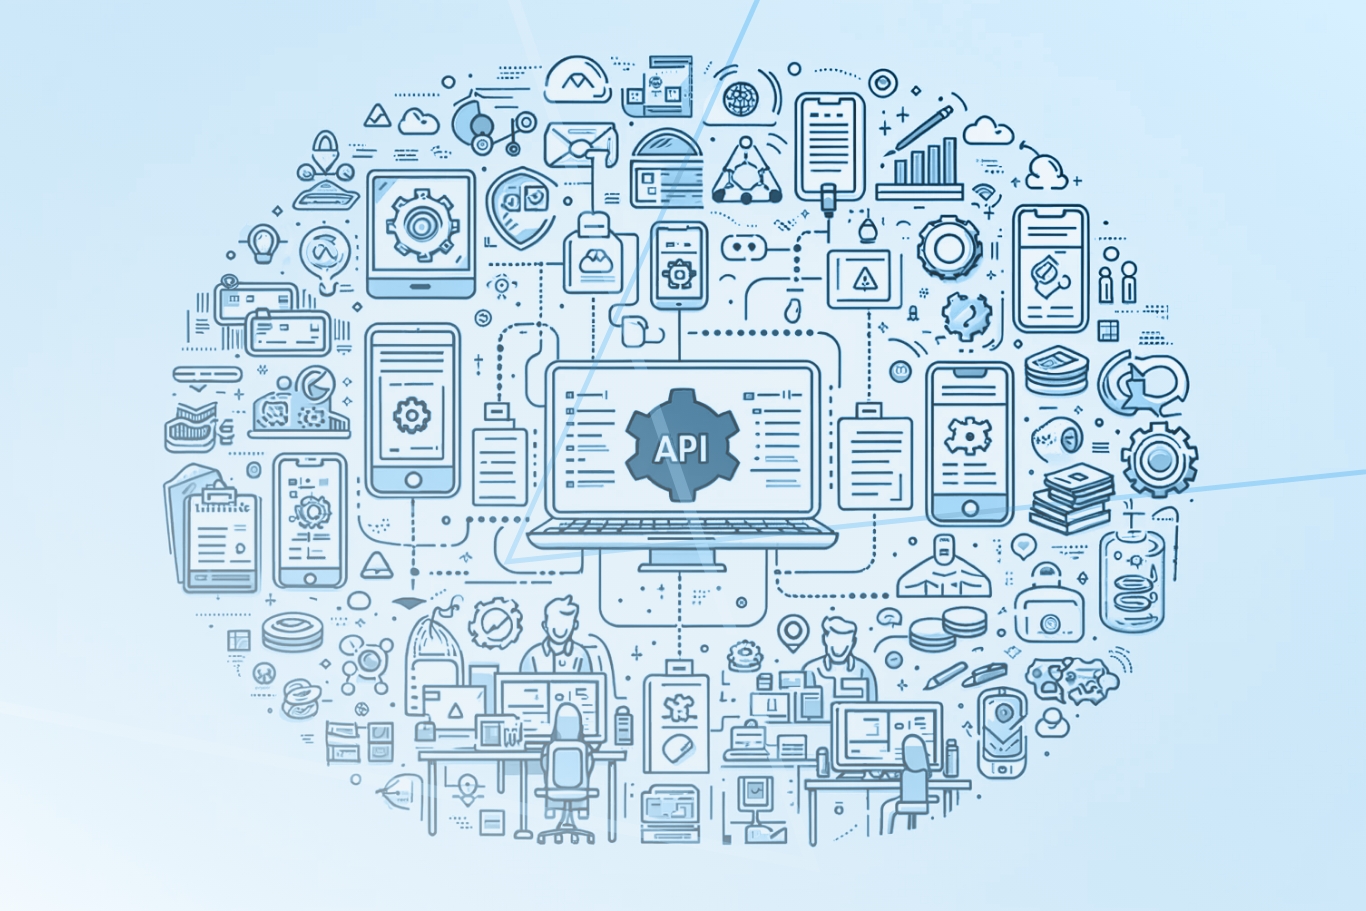 pruebas de APIs, calidad de software, rendimiento de aplicaciones, automatización de pruebas, seguridad API, integración de servicios, desarrollo de software a medida